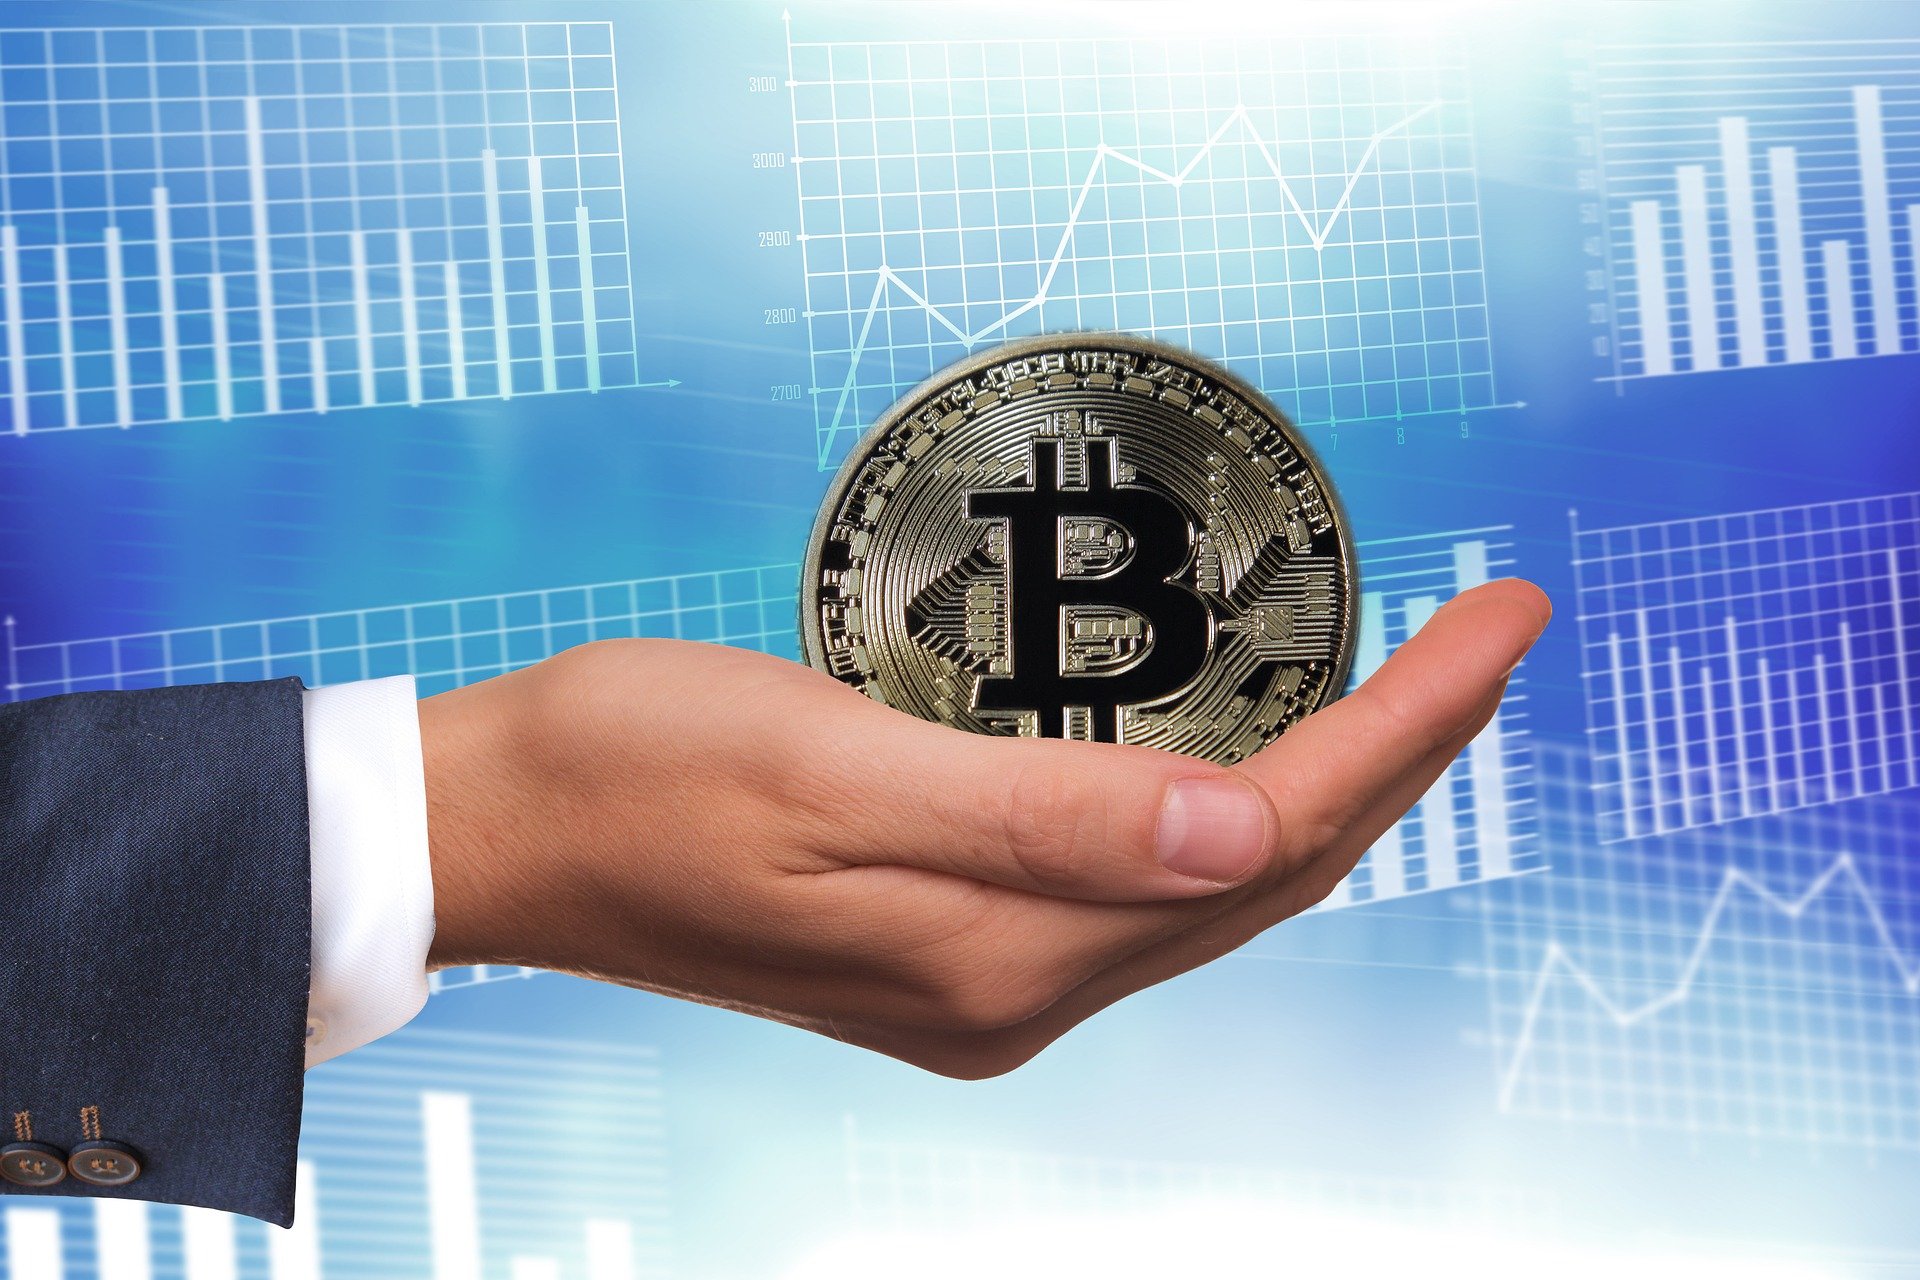 cumpărarea de bitcoin contează ca un schimb zilnic